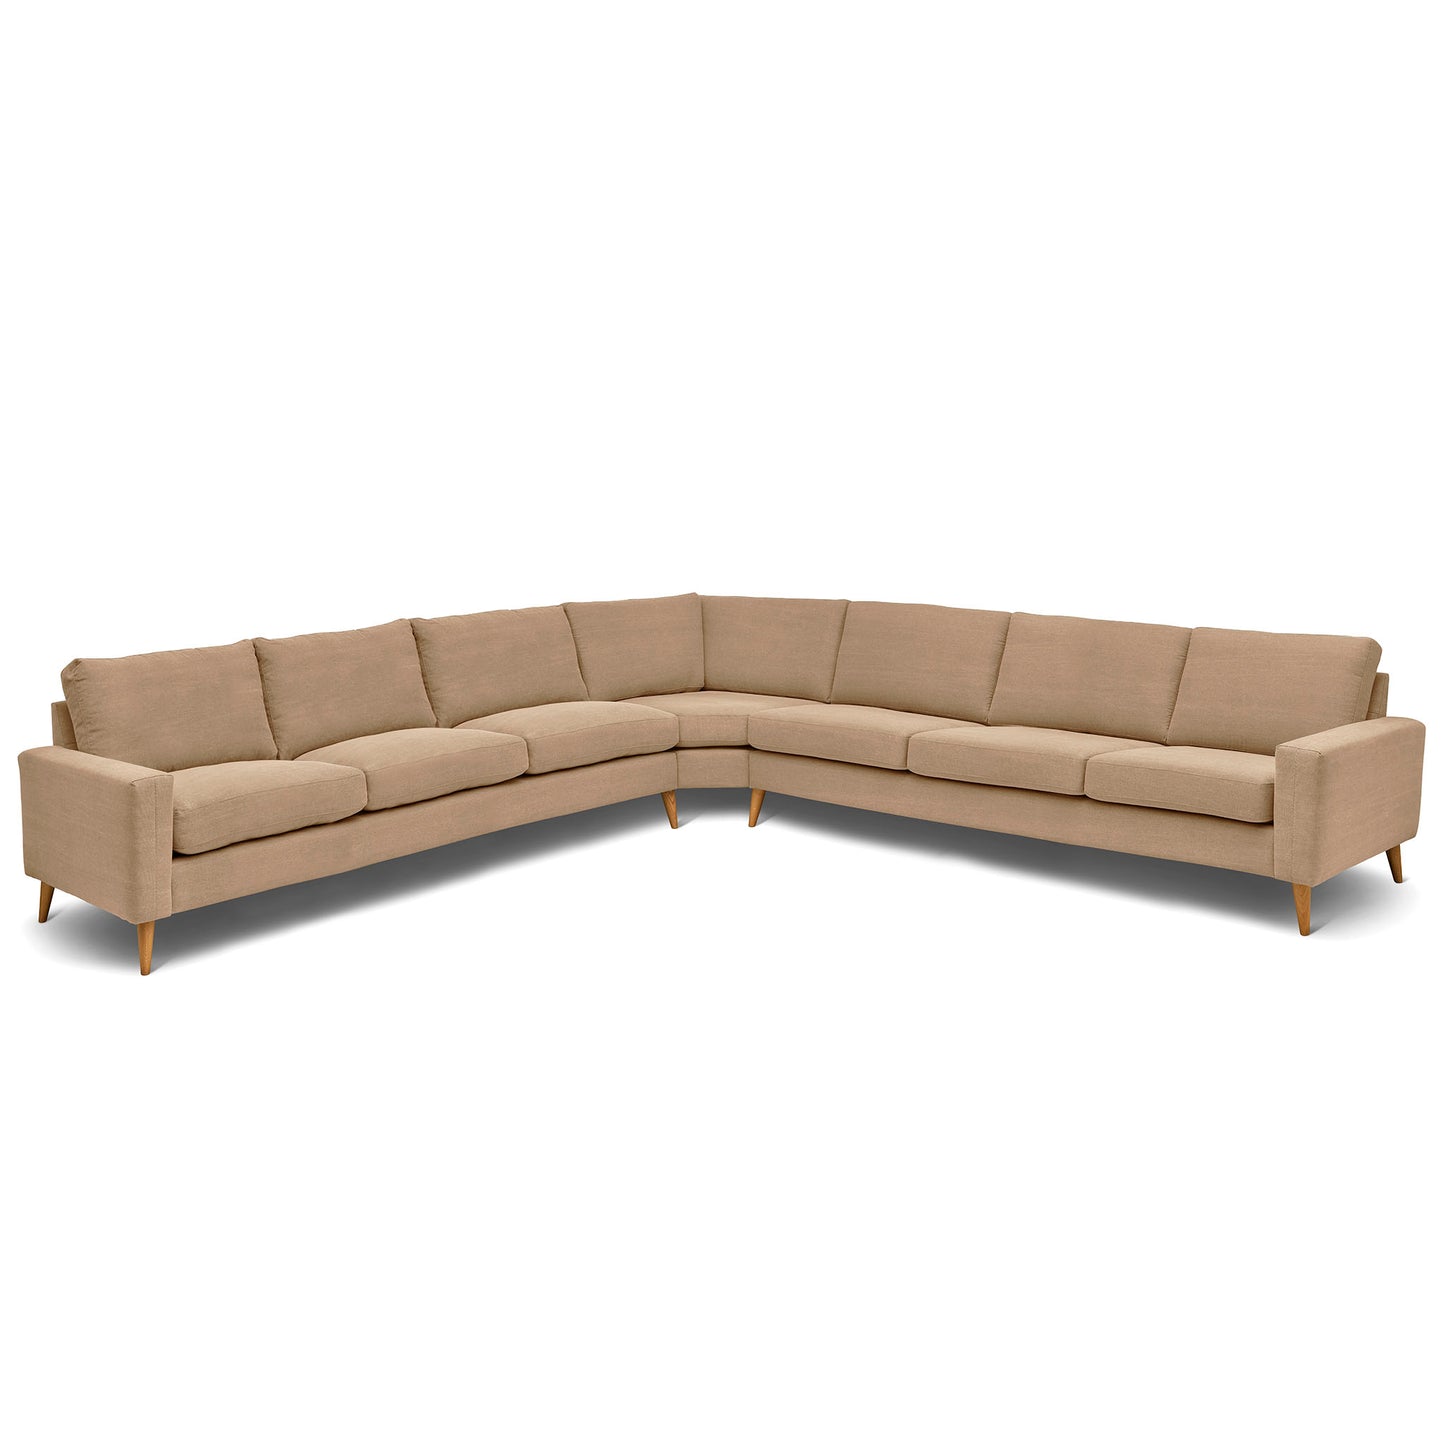 Stor kvadratisk hörnsoffa med måttet 360x360 cm. Sittvänlig soffa för äldre i beige tyg